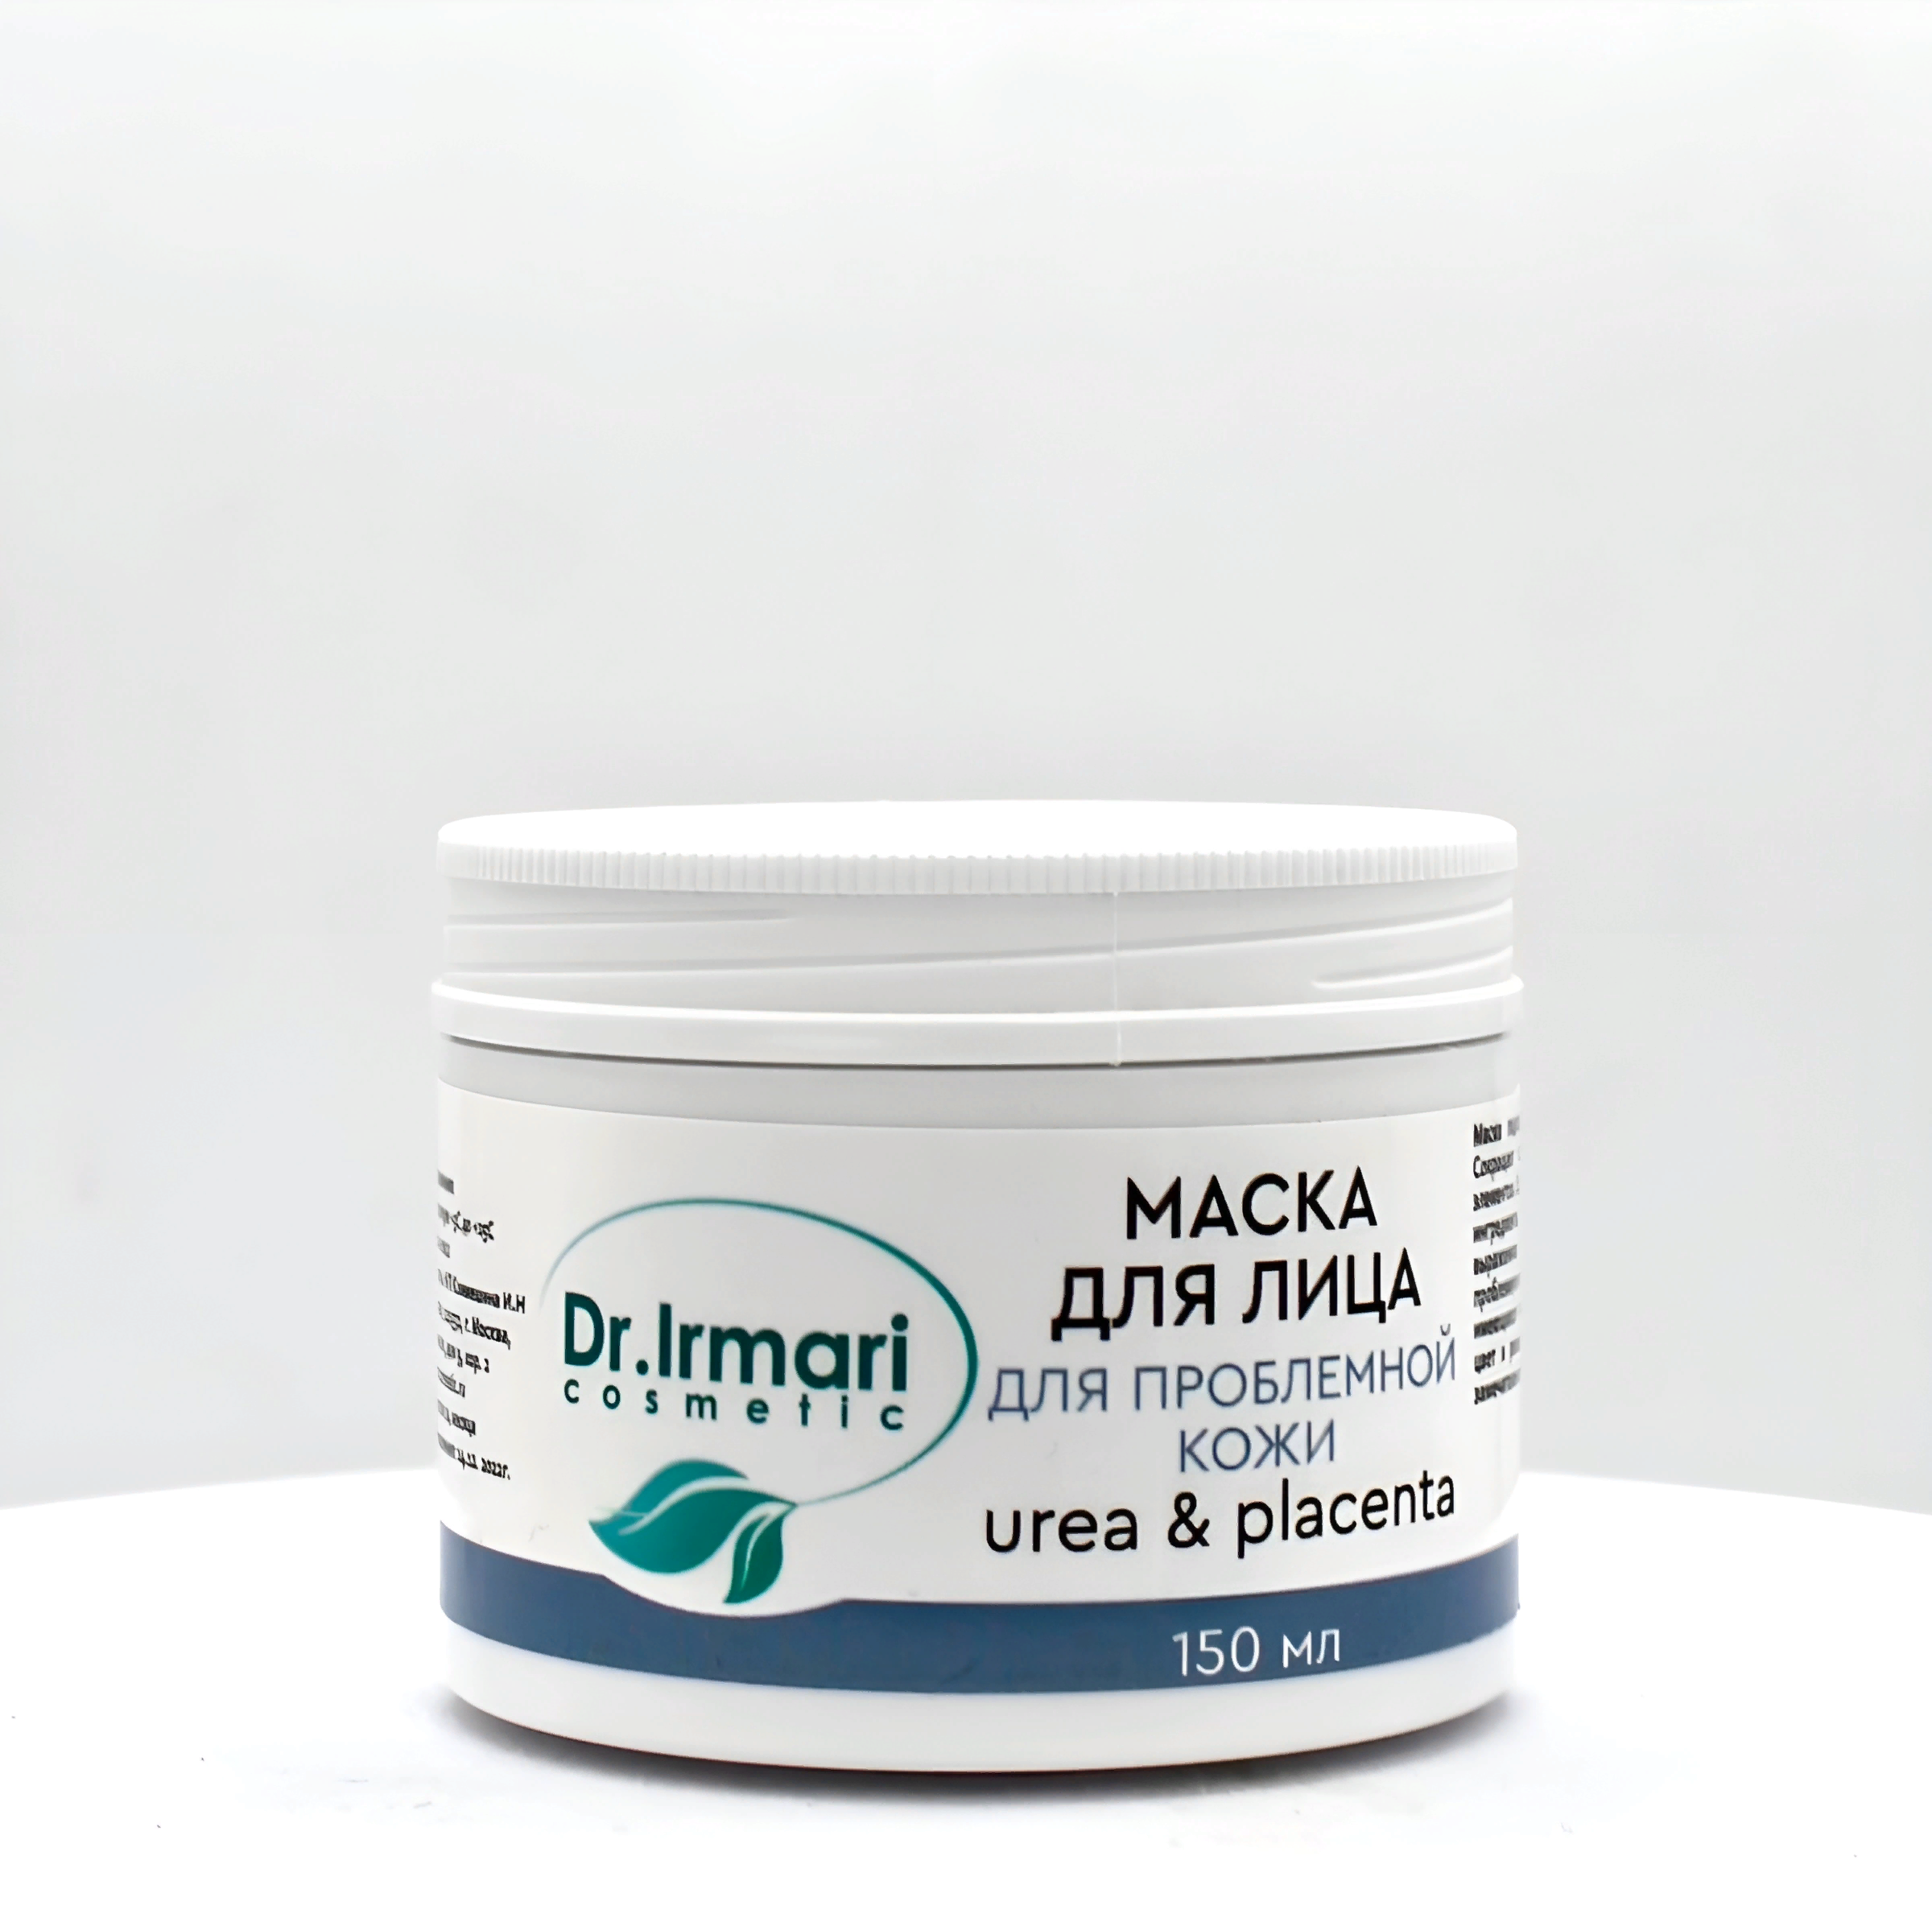 Маска для лица Dr.Irmari cosmetic Urea & Placenta для проблемной кожи 150 мл маска для лица dr irmari cosmetic urea